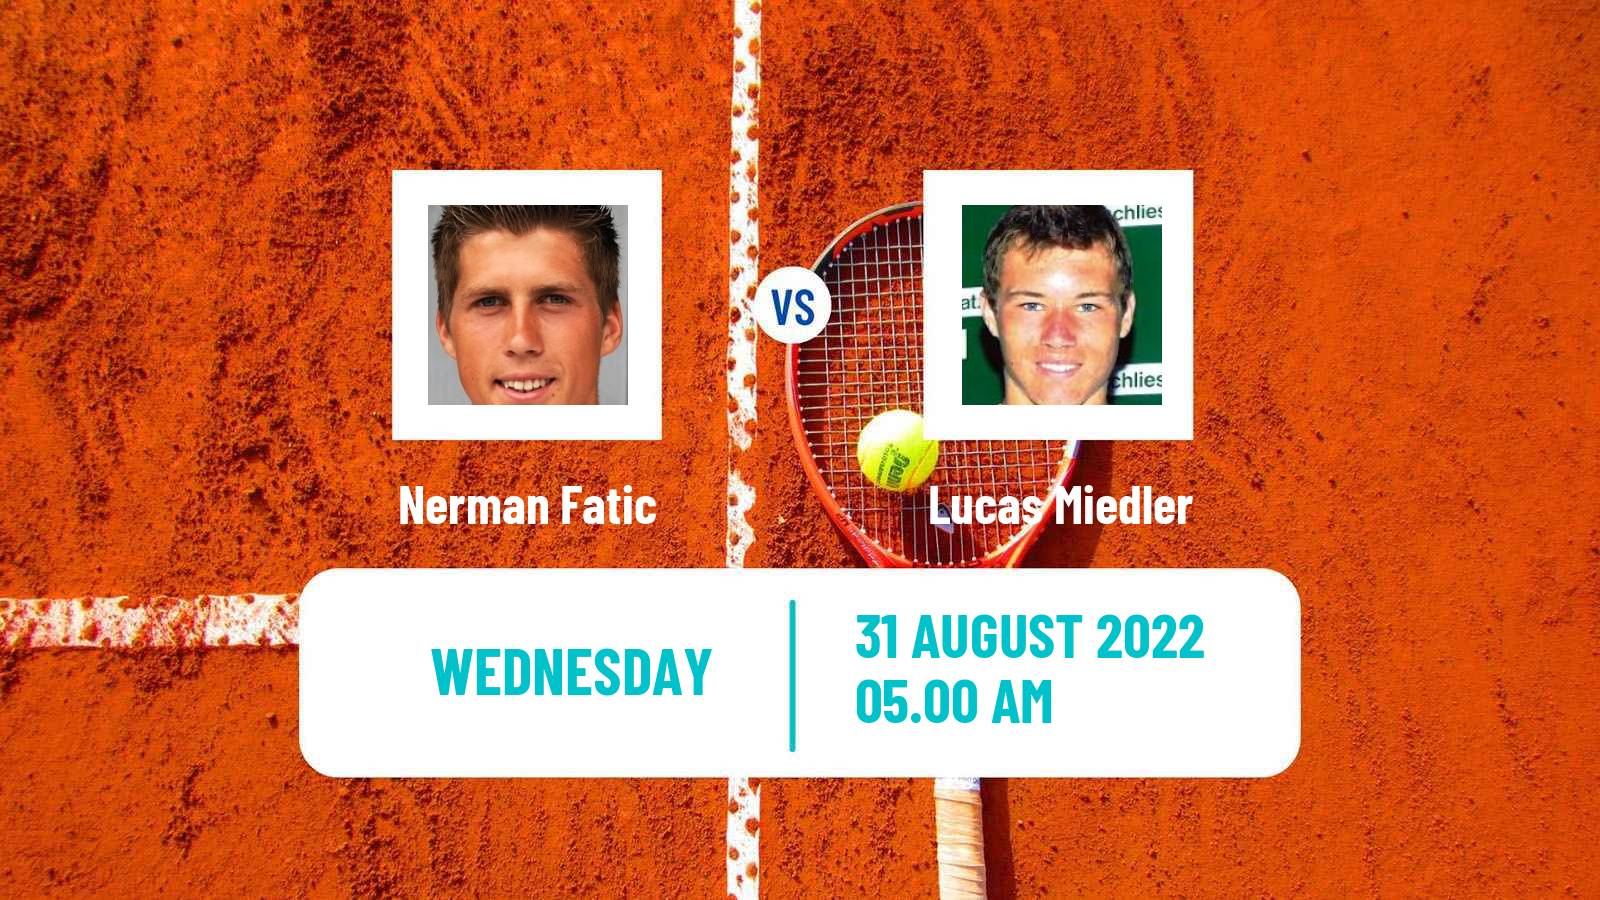 Tennis ATP Challenger Nerman Fatic - Lucas Miedler